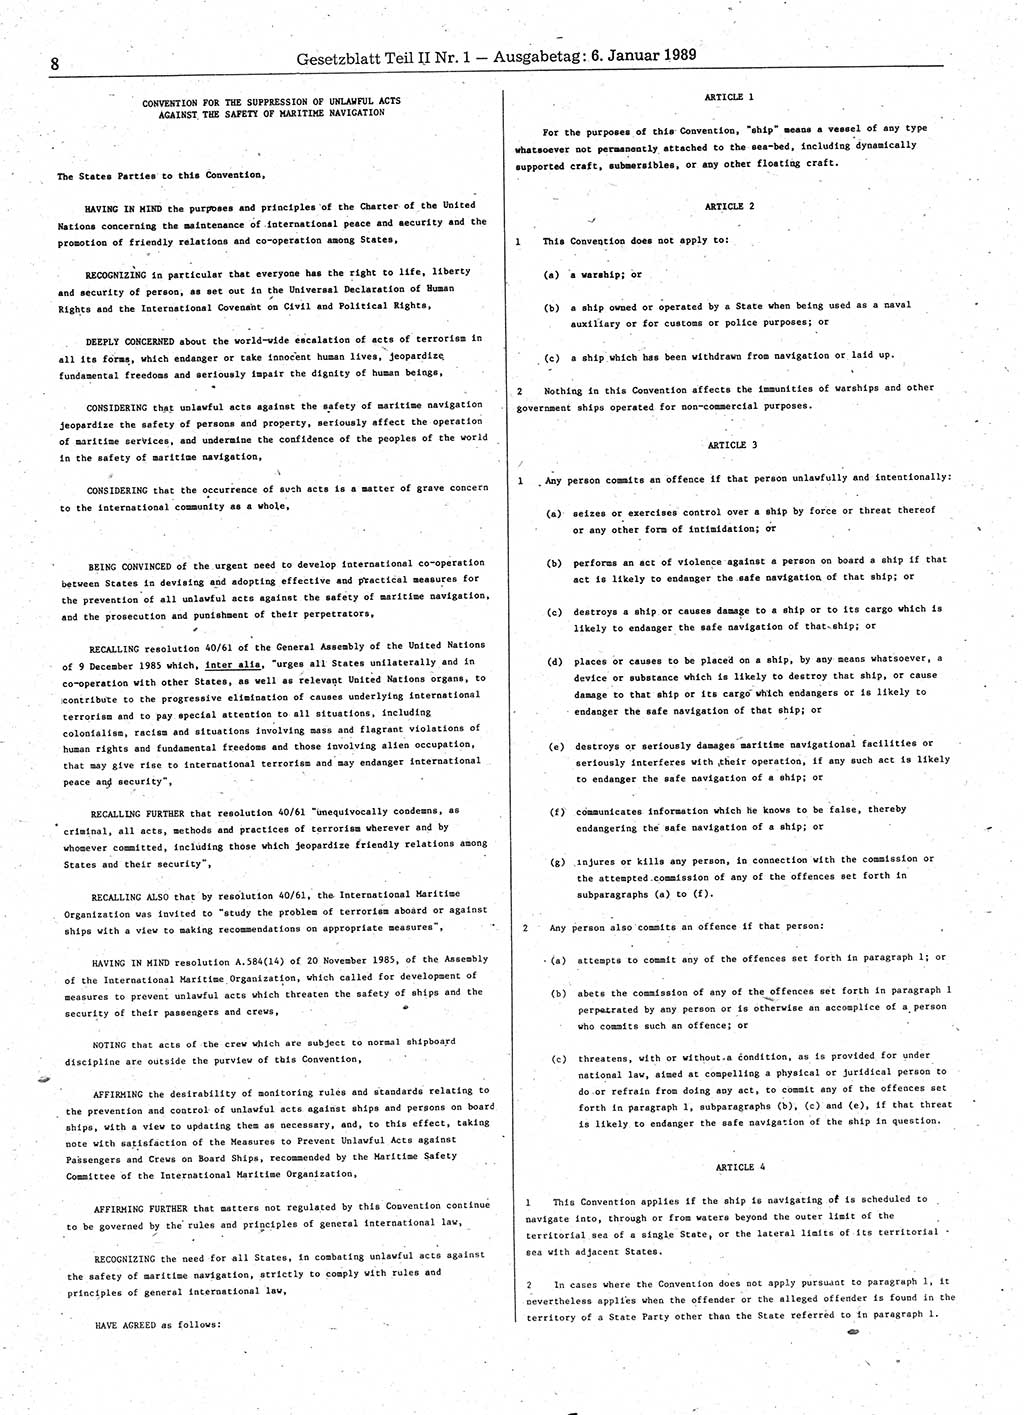 Gesetzblatt (GBl.) der Deutschen Demokratischen Republik (DDR) Teil ⅠⅠ 1989, Seite 8 (GBl. DDR ⅠⅠ 1989, S. 8)